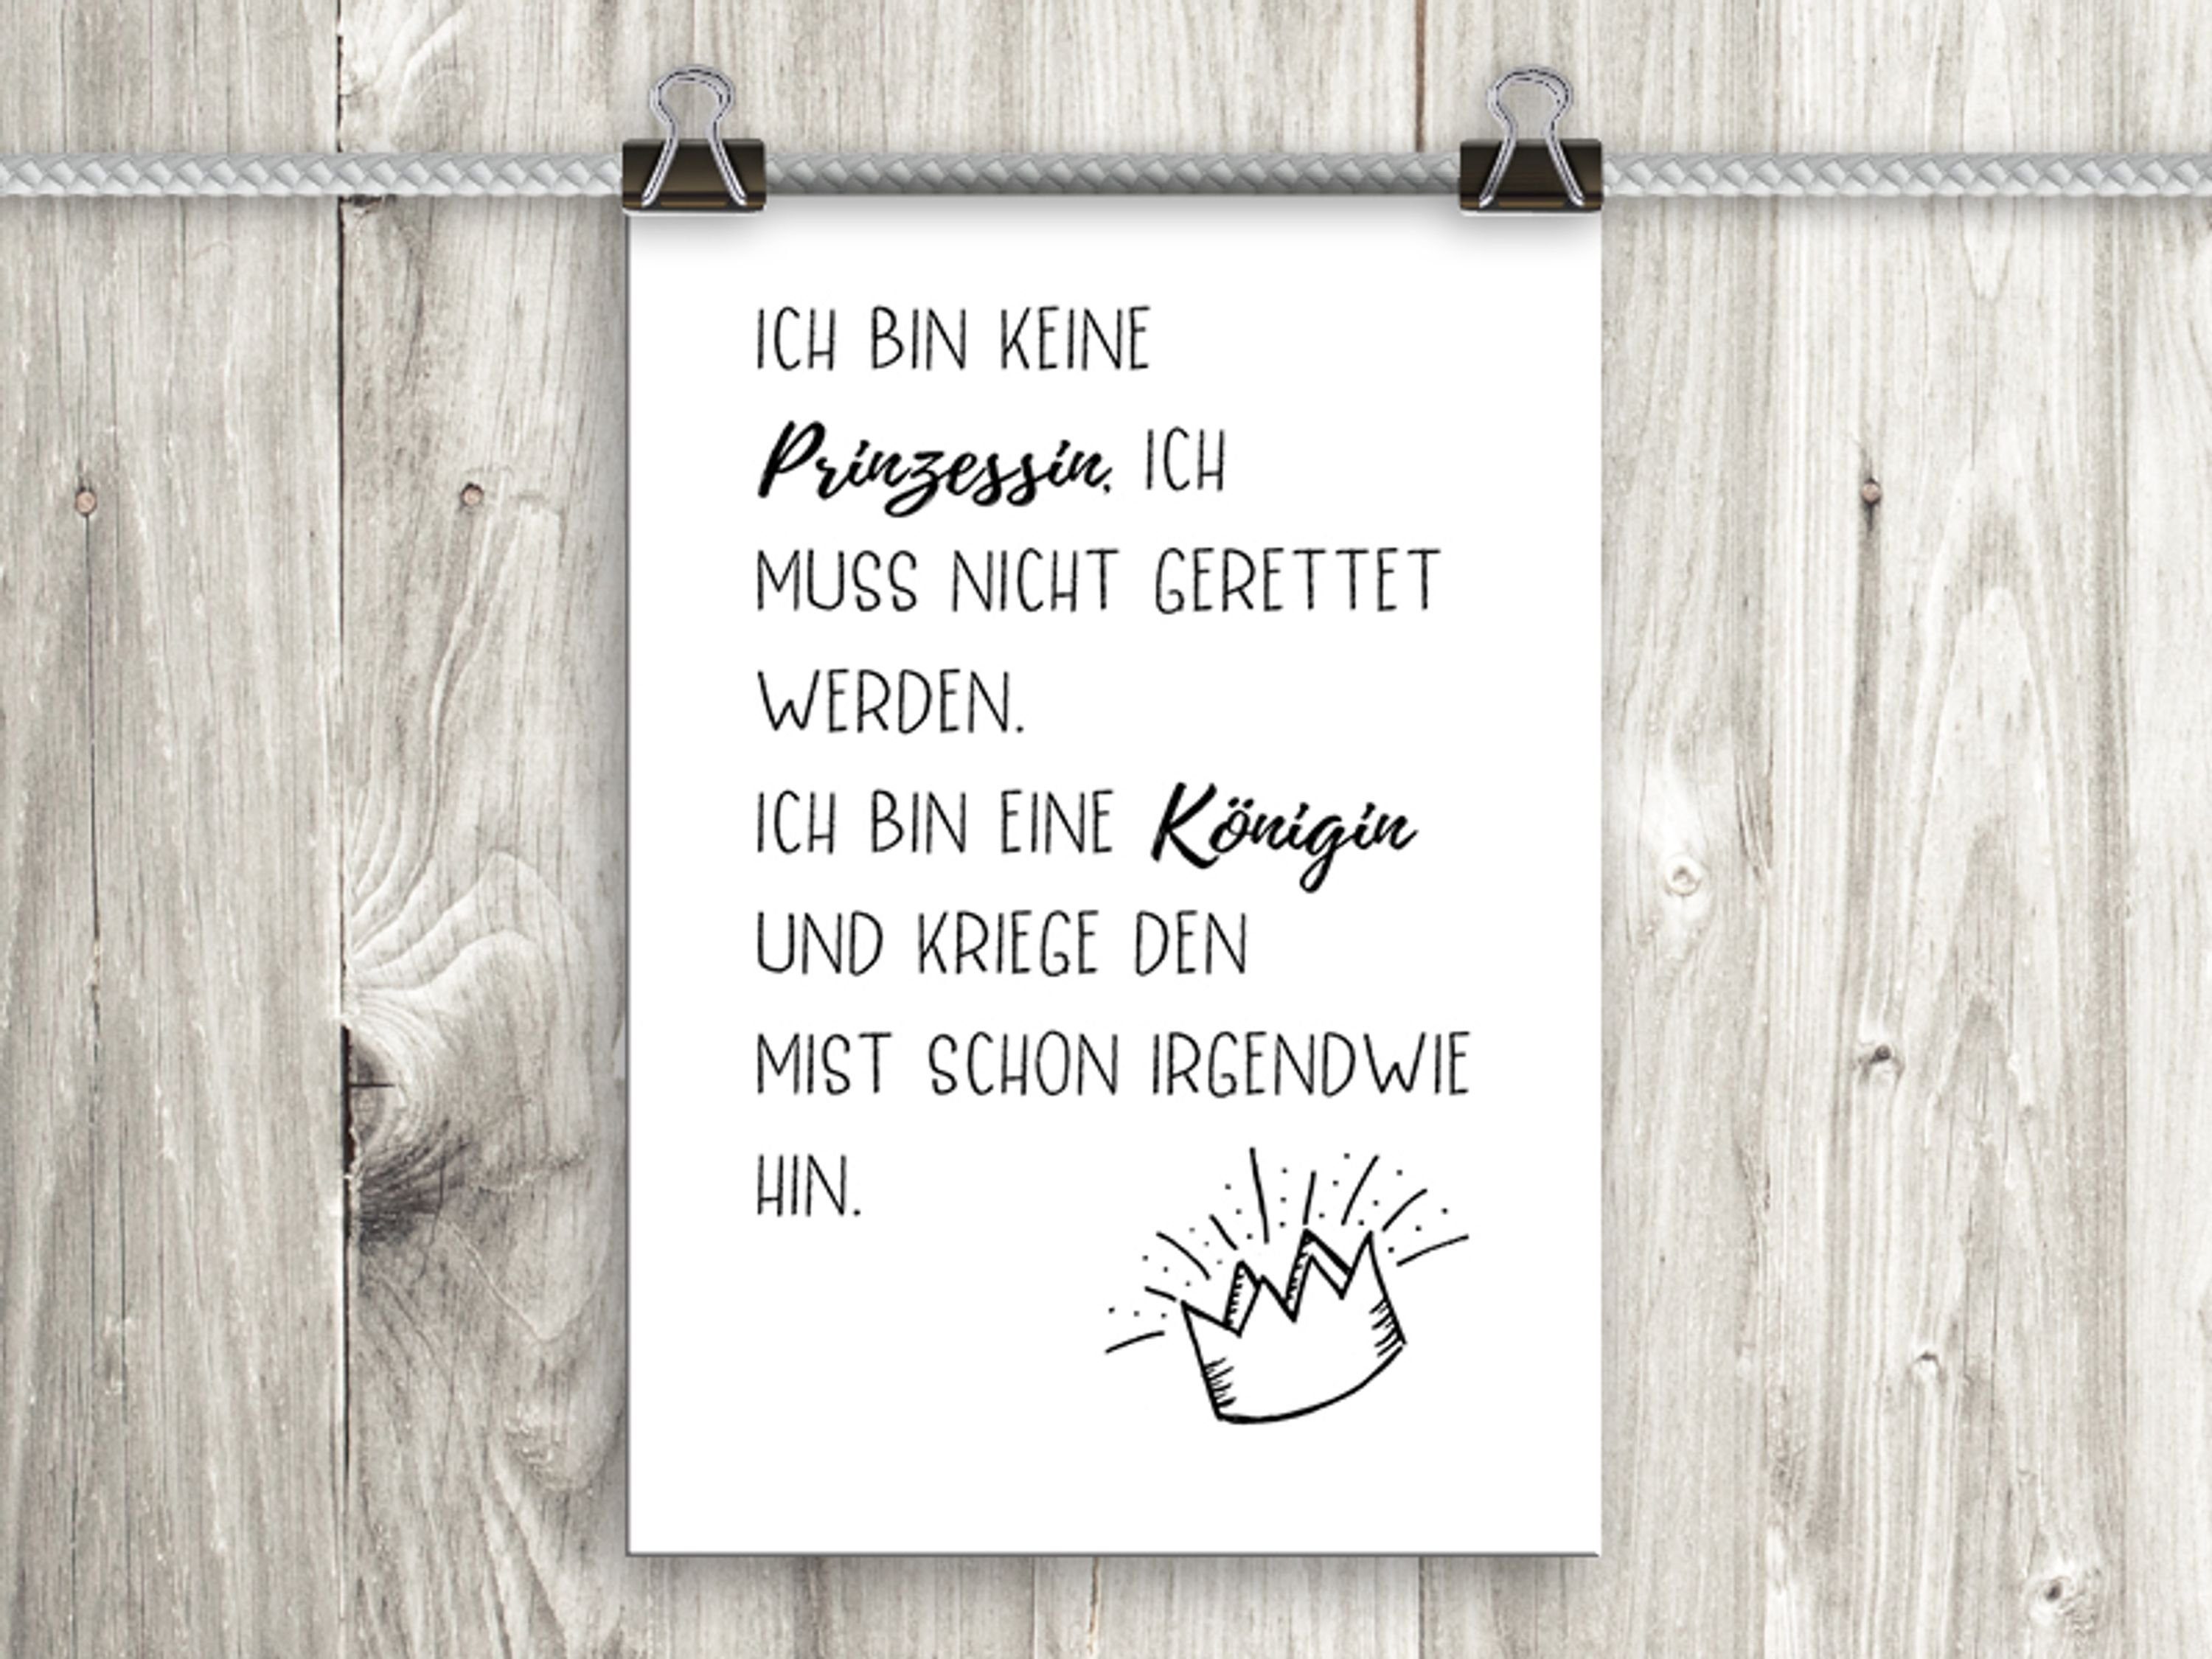 Poster artissimo Sprüche mit Poster Prinzessin Prinzessin Spruch und Zitate lustige DinA4 schwarz-weiß, Bild lustige Sprüche: